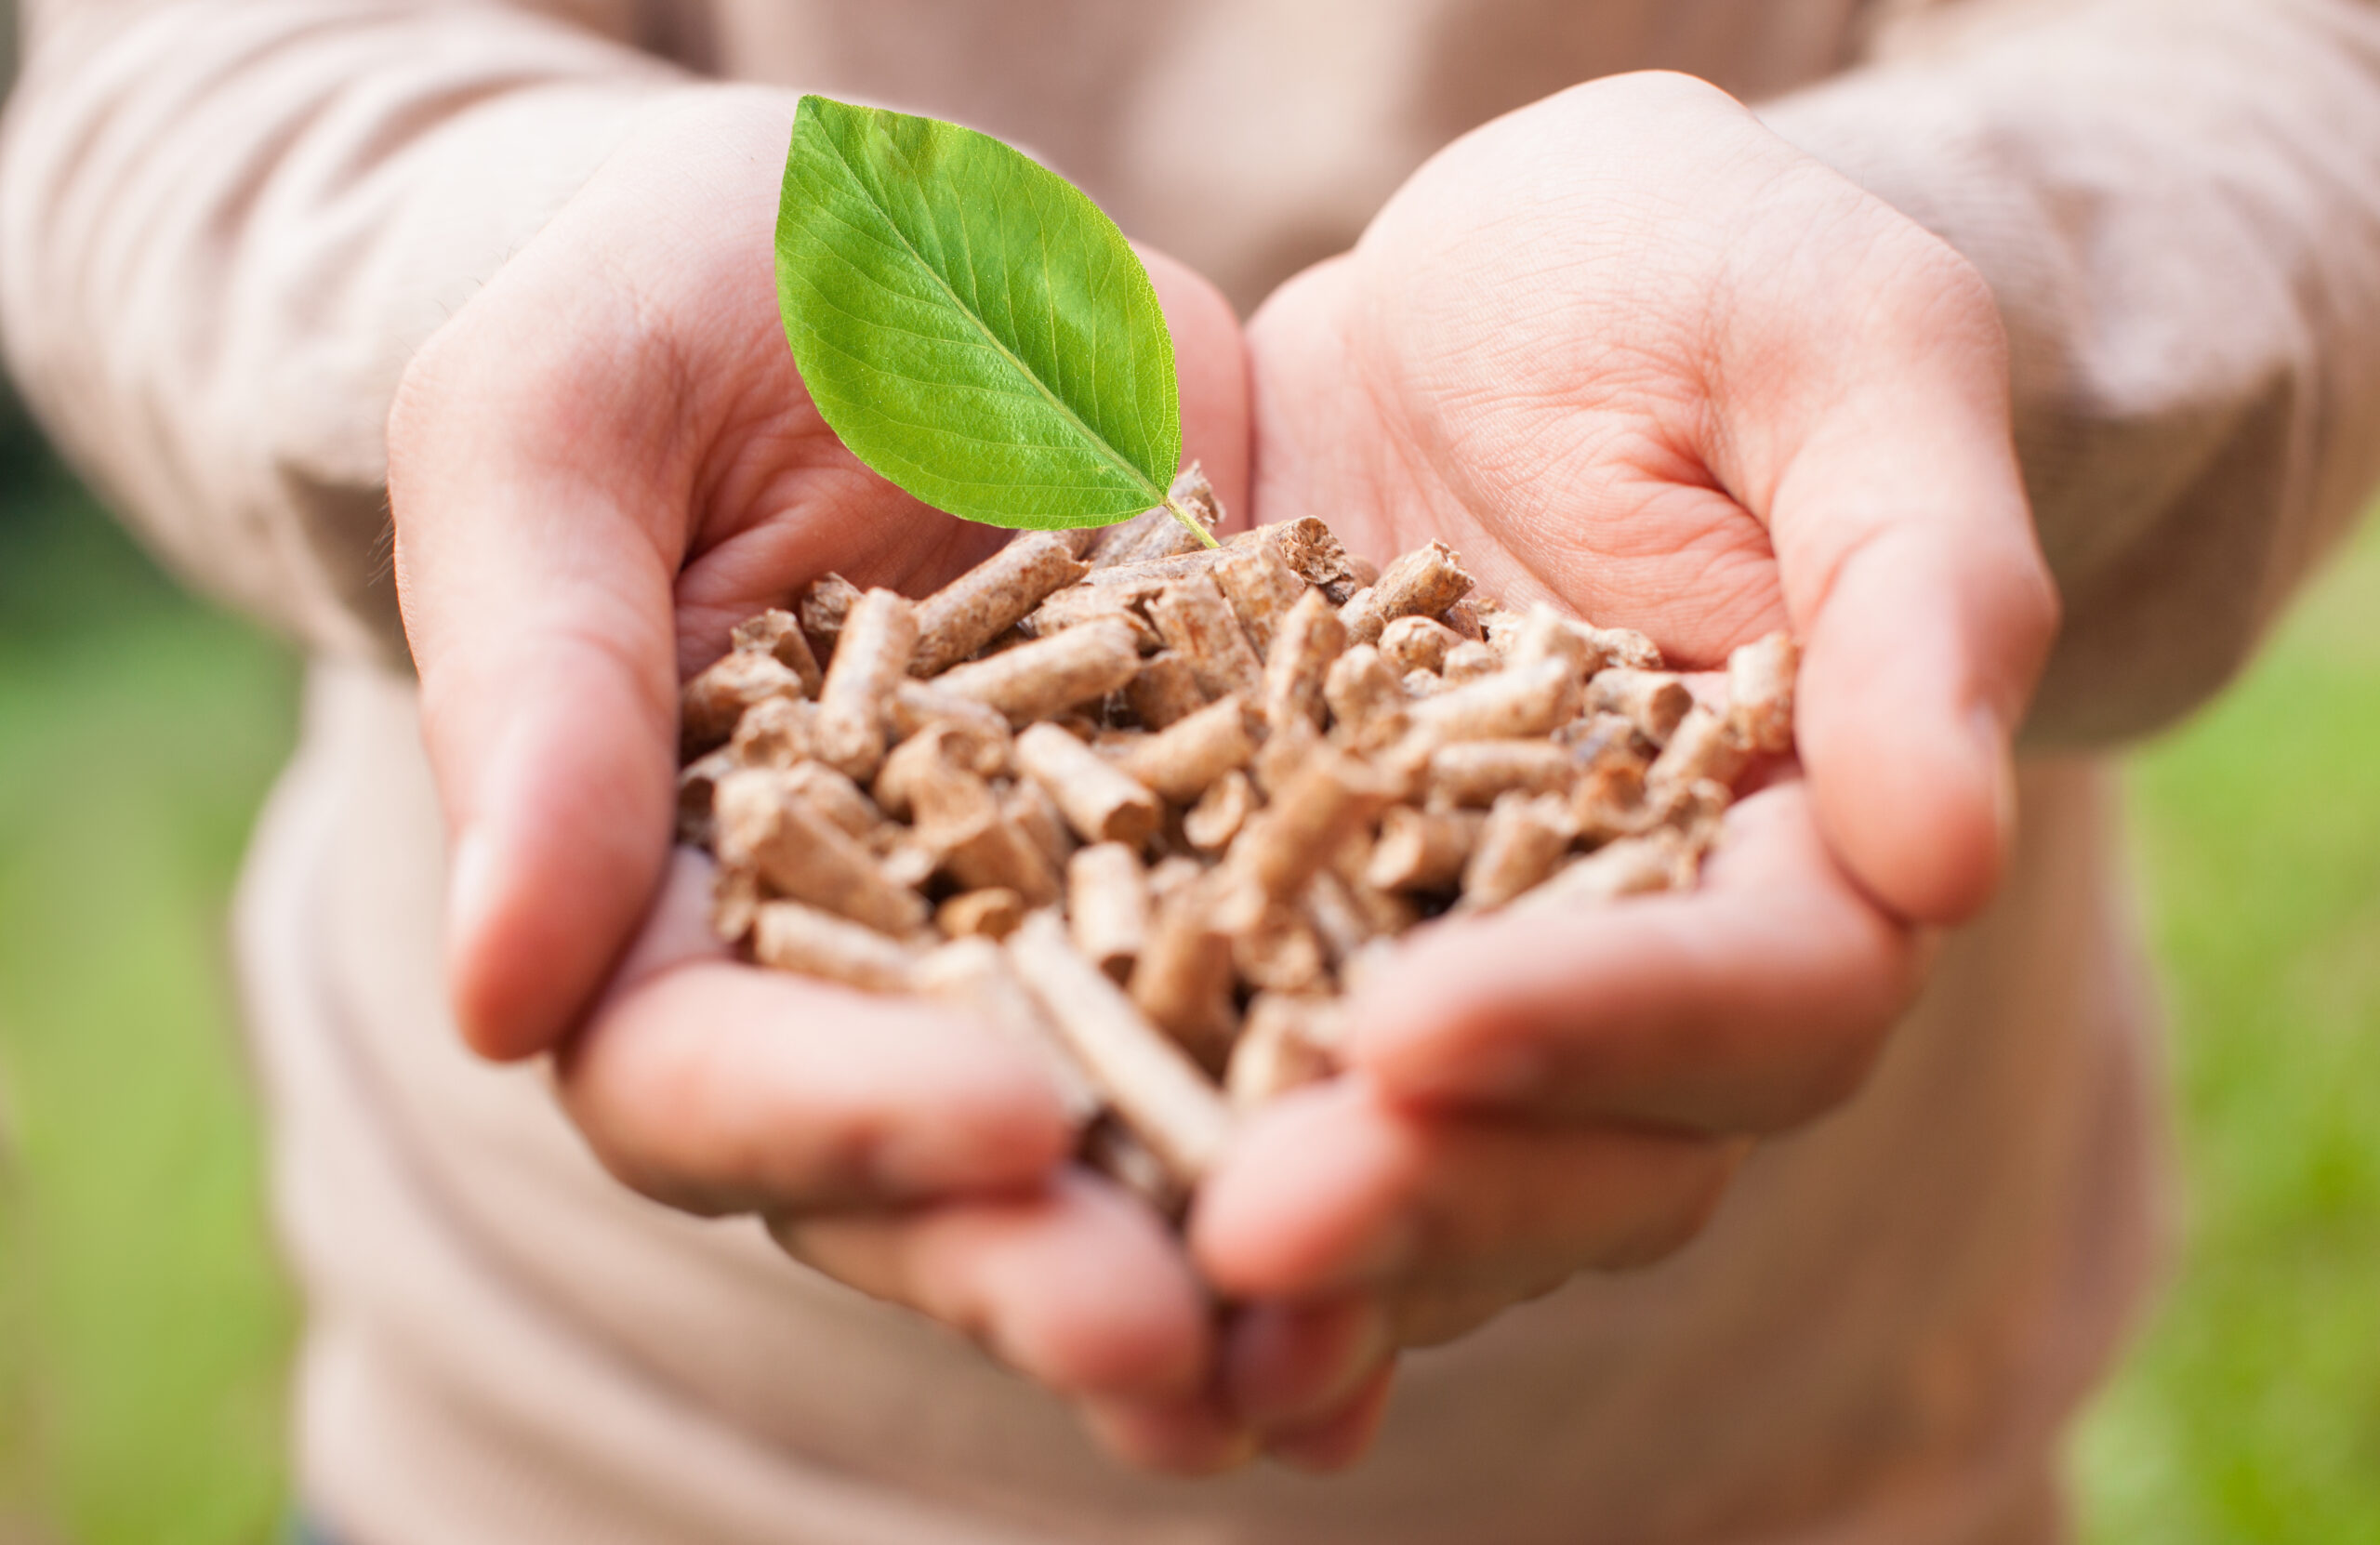 Biomasse: cosa sono e come funzionano